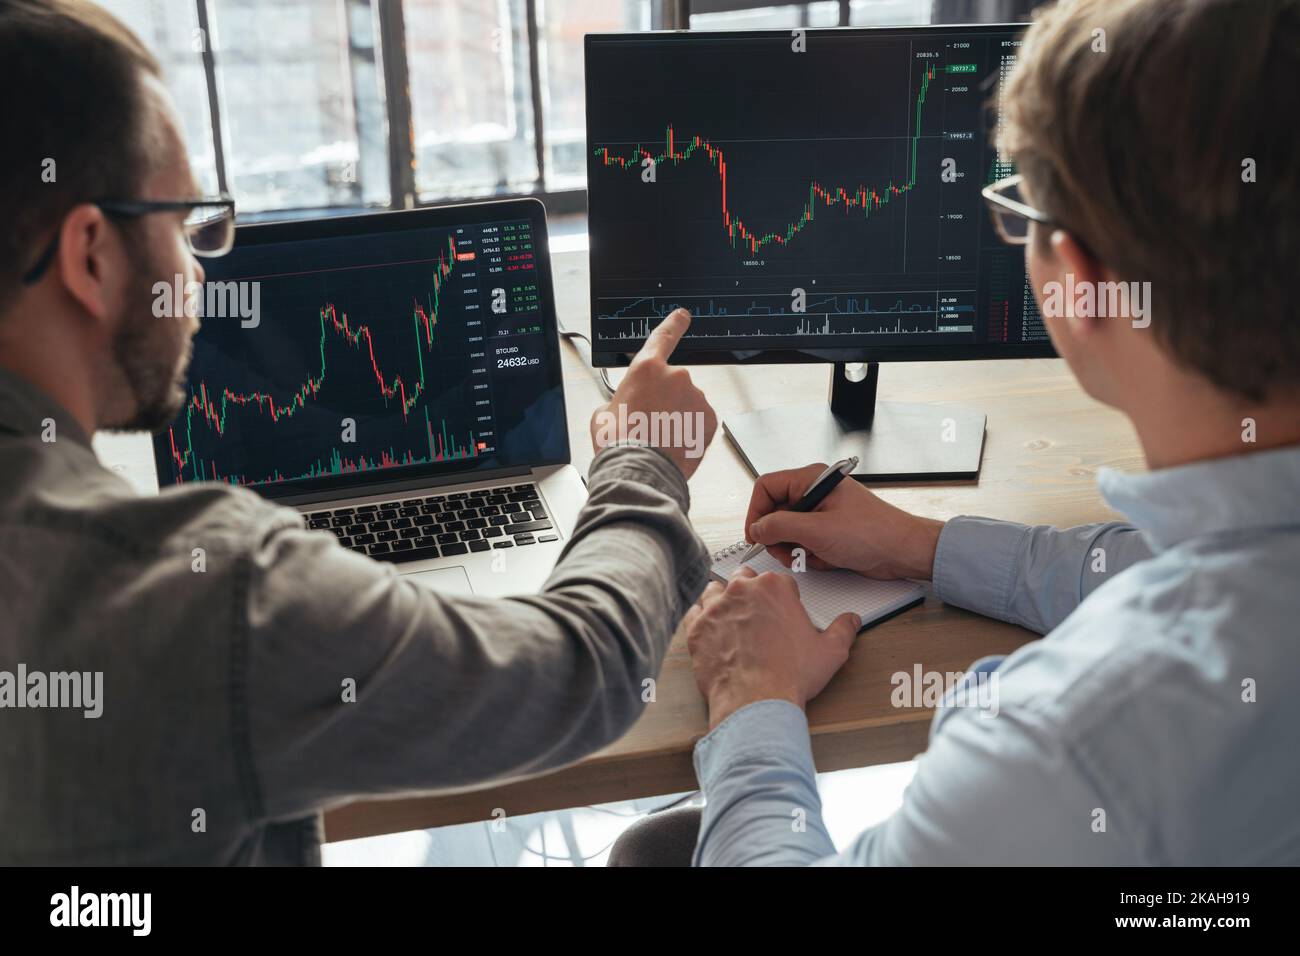 Gros plan de deux hommes crypto commerçants assis à la table de bureau ensemble devant le pc, le suivi des diagrammes de données des stocks à l'écran, l'analyse des flux de prix. Travail d'équipe à but lucratif. Argent numérique Banque D'Images